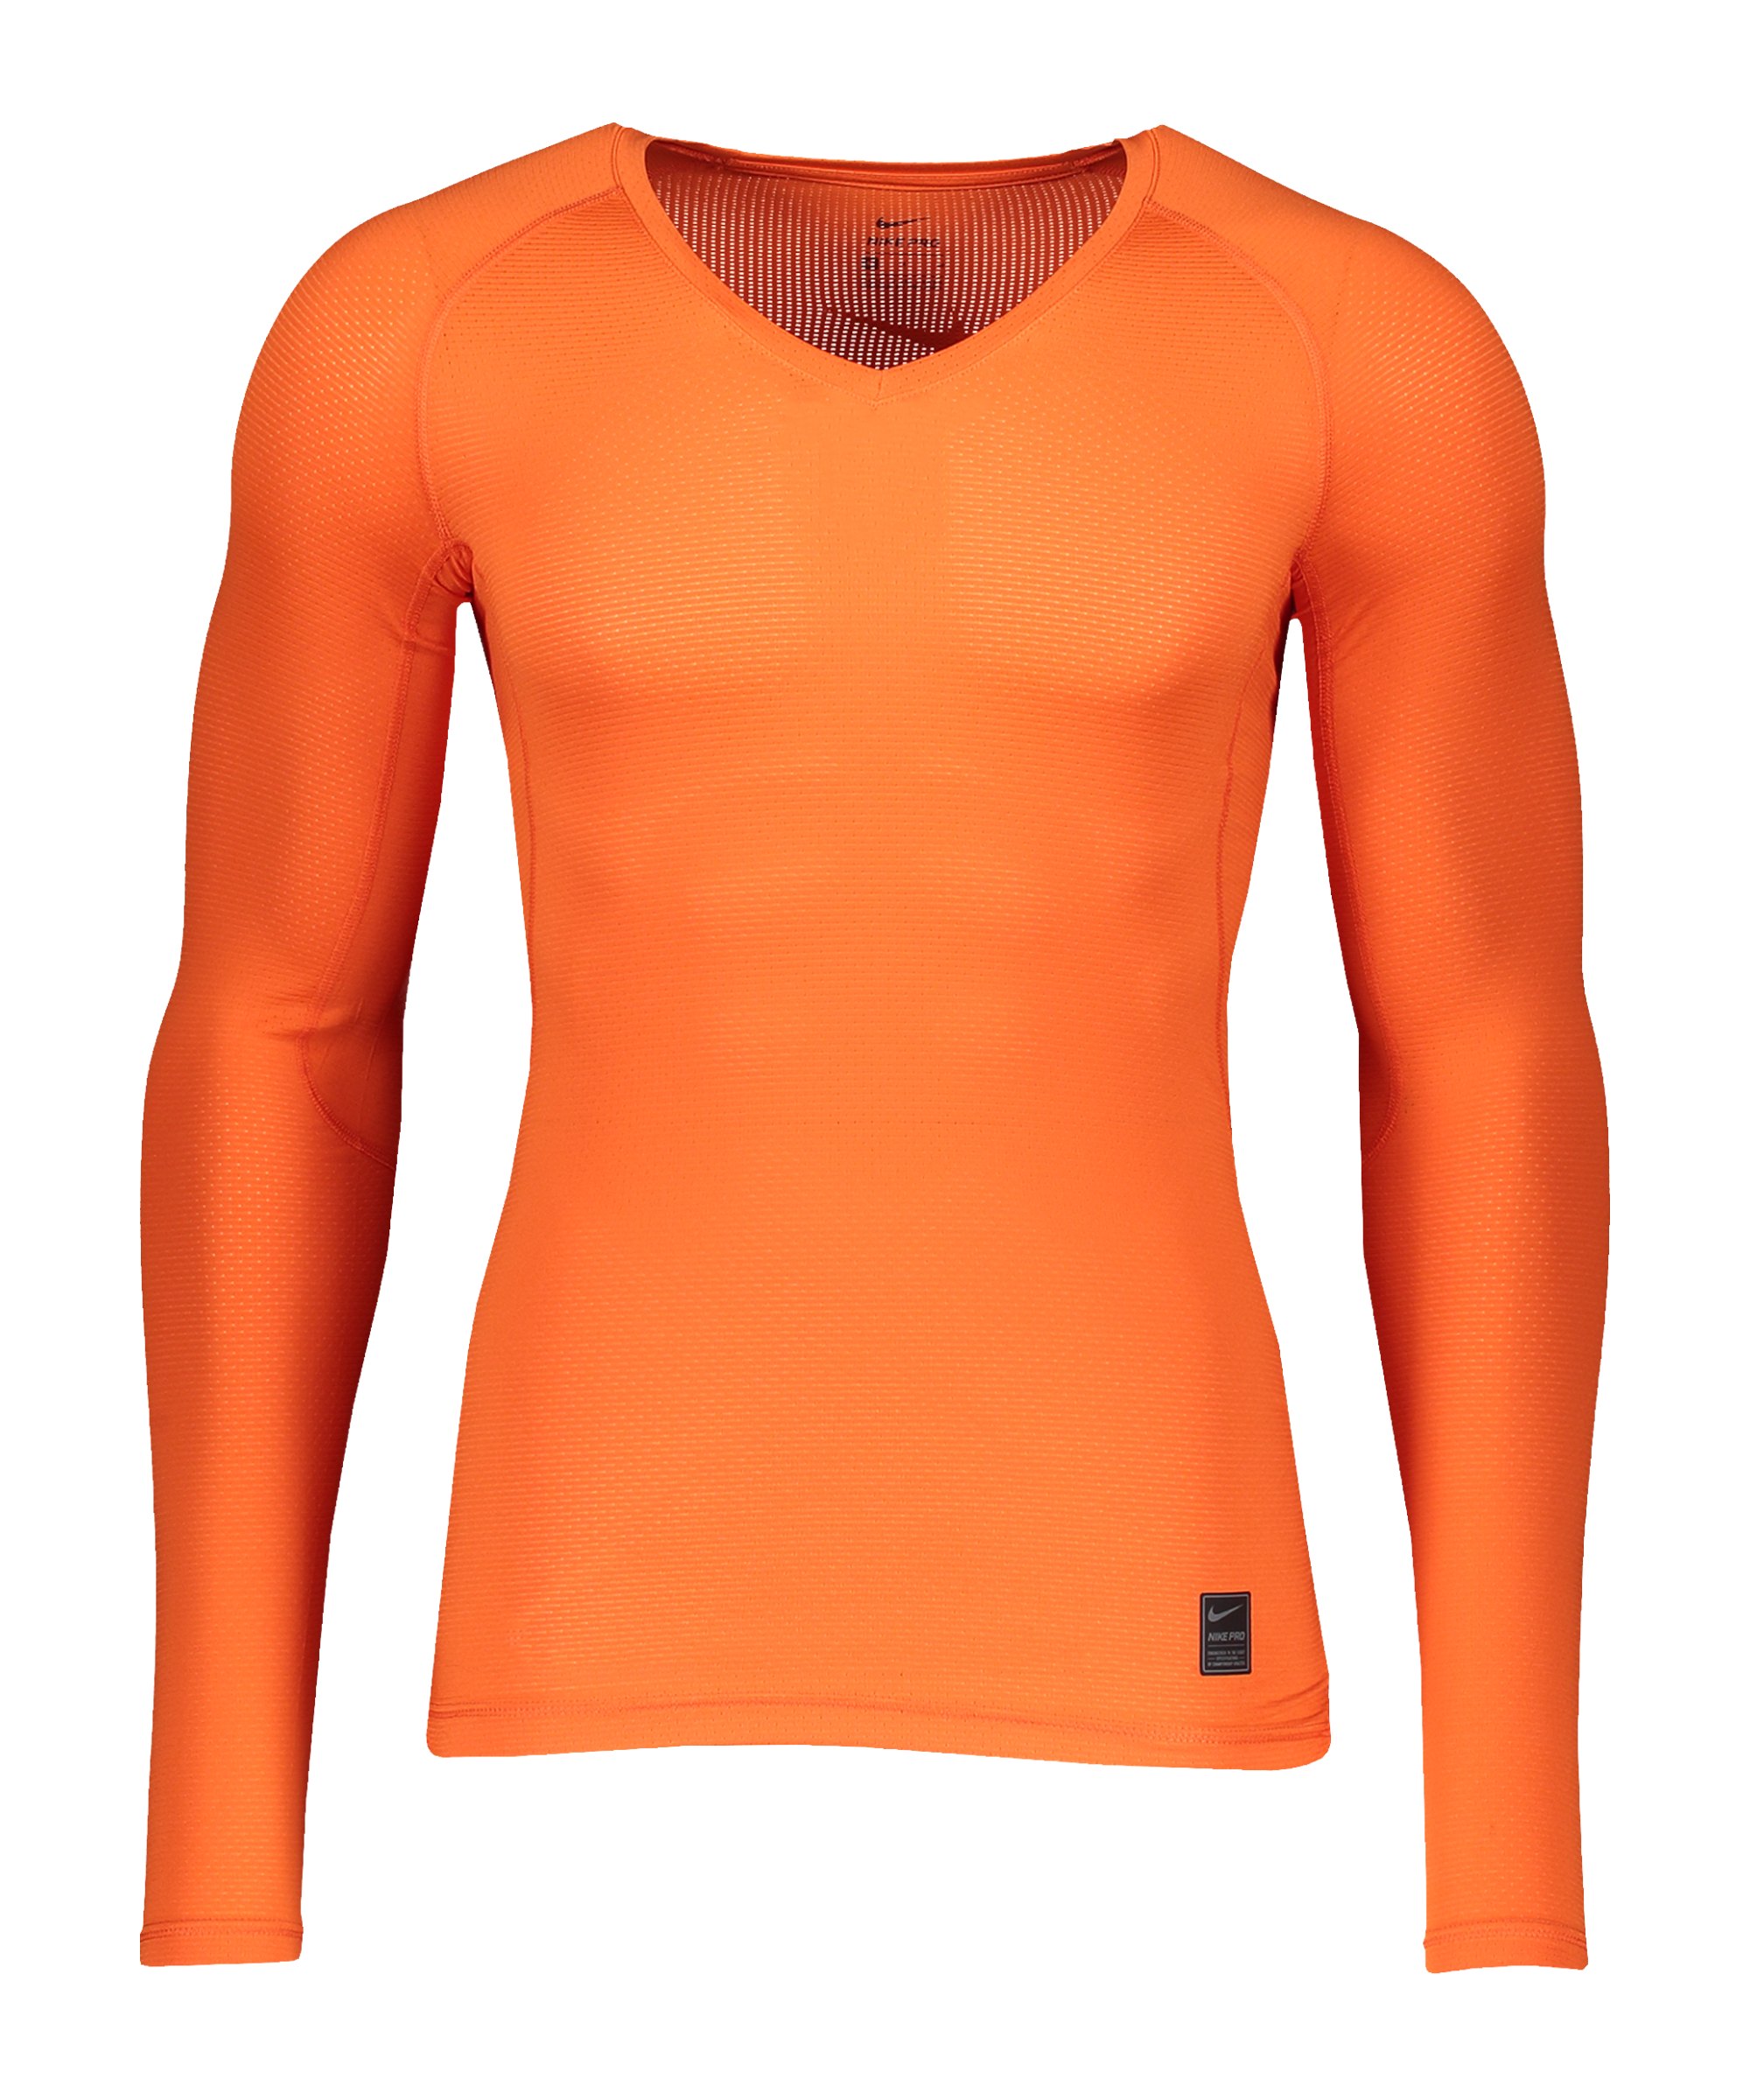 Nike Pro Hypercool Comp Shirt langarm Orange F837 - orange